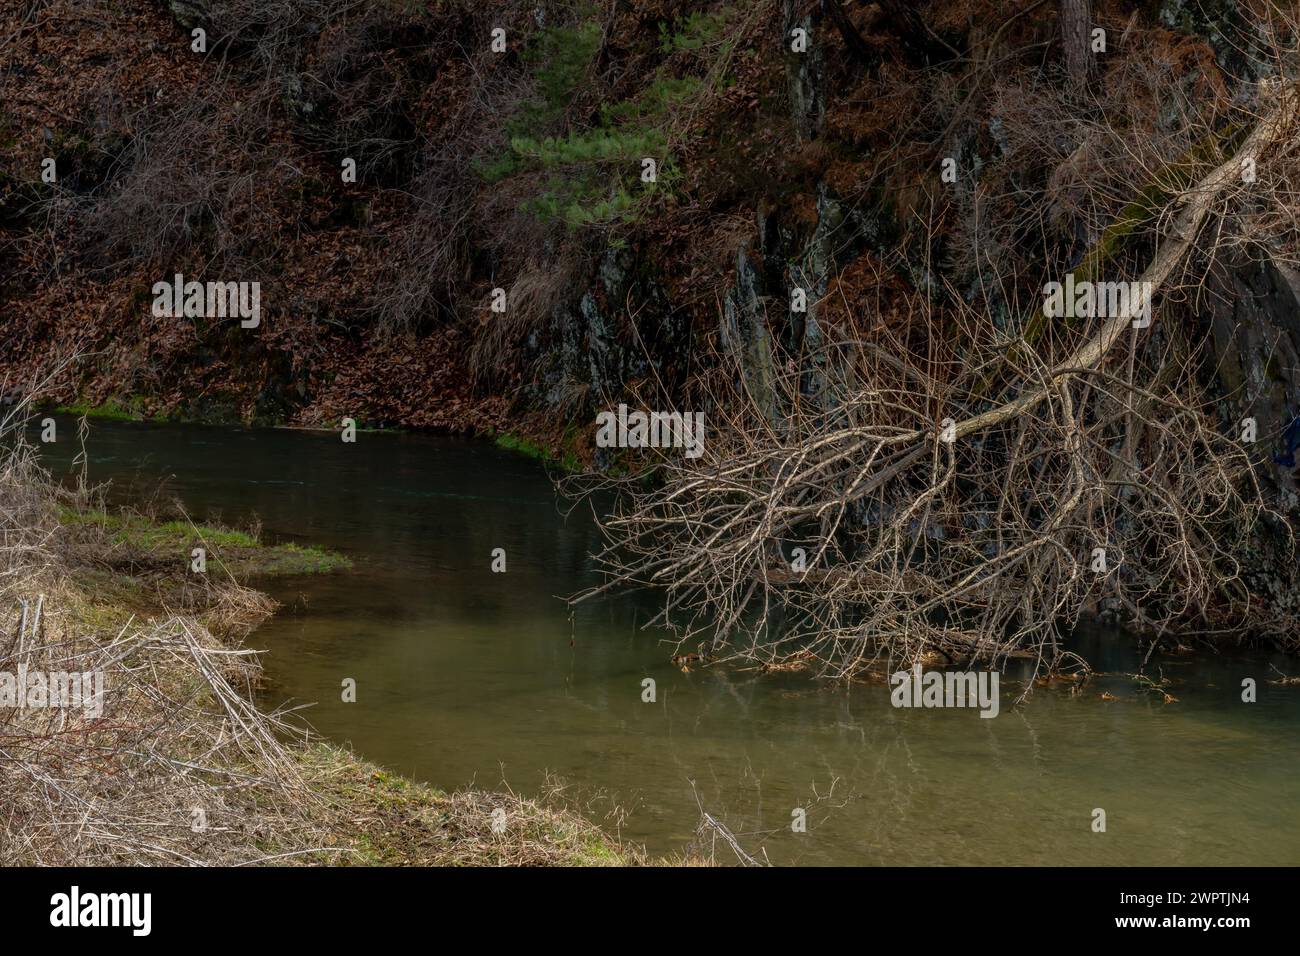 Un ruisseau tranquille bordé de branches sèches en surplomb et de tons terreux, en Corée du Sud Banque D'Images